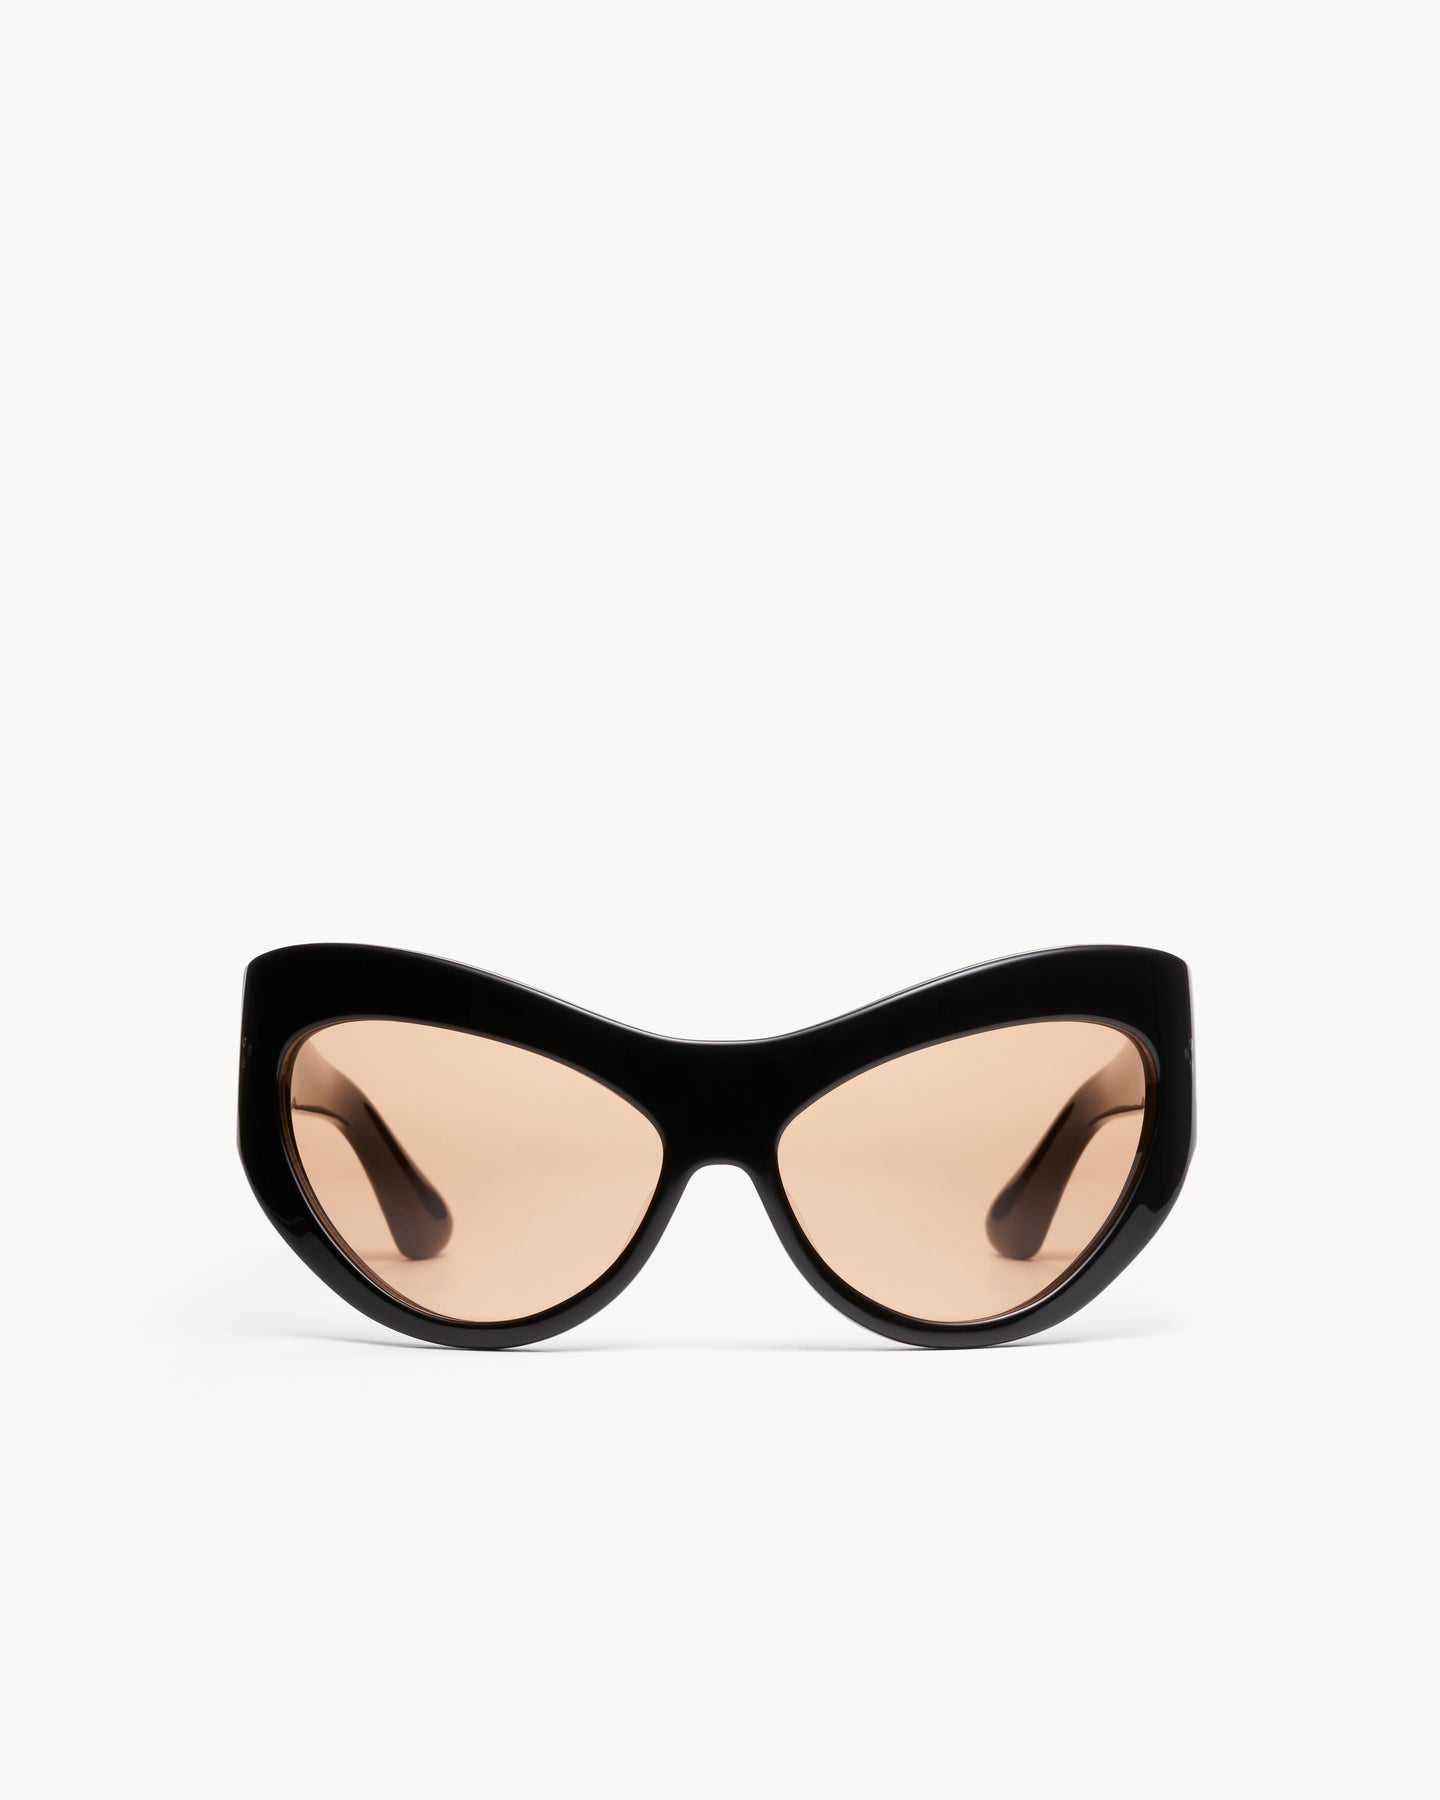 Port Tanger Darya Sunglasses in Black Acetate and Amber Lenses 1